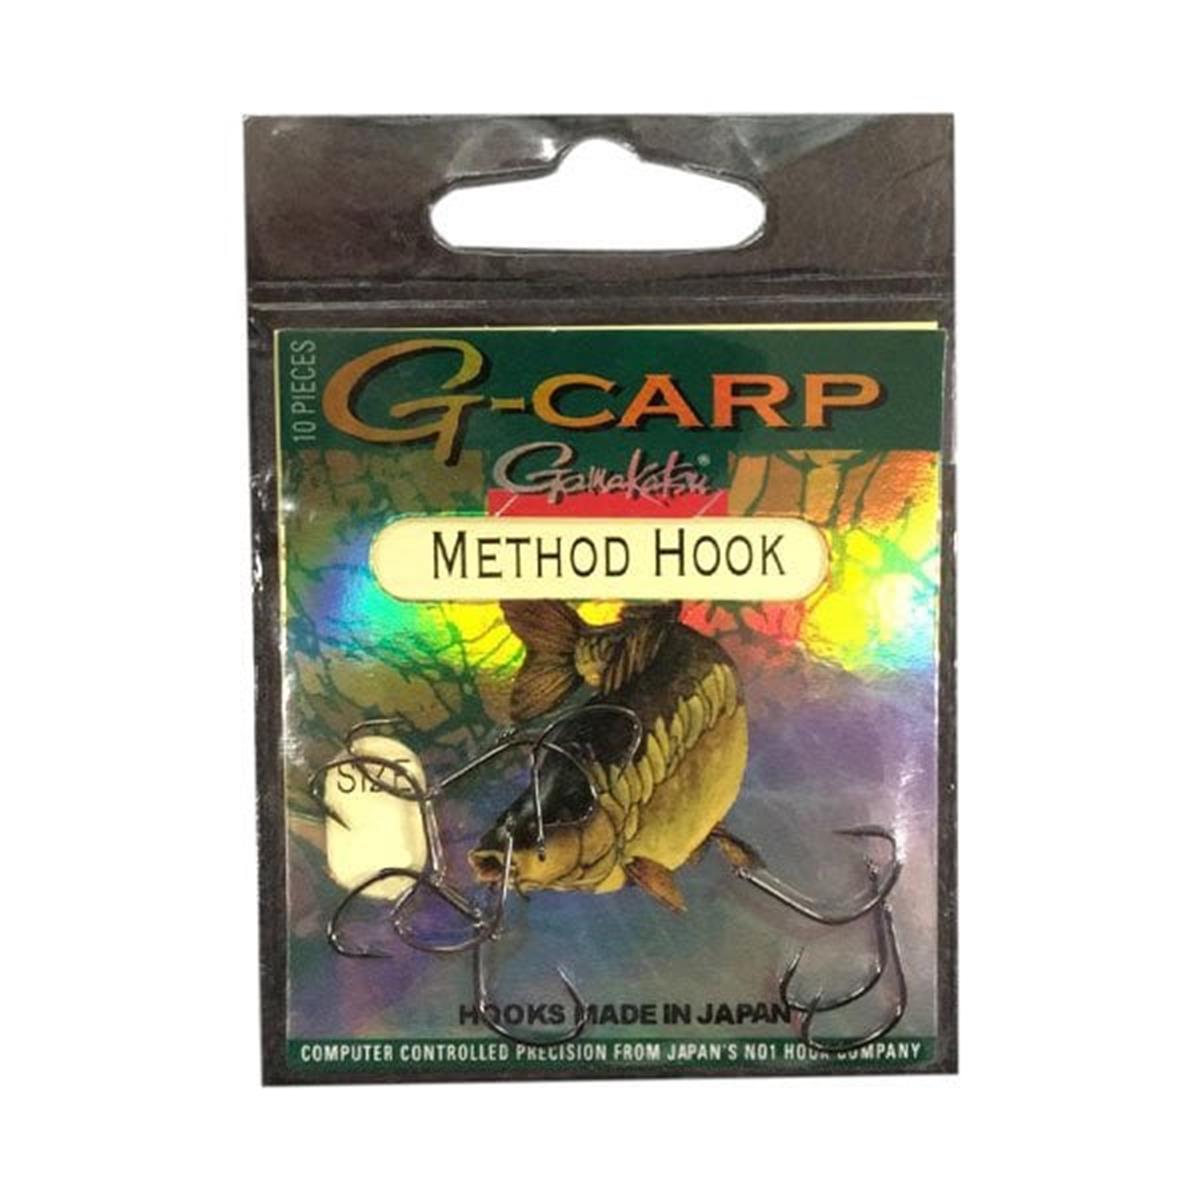 Gamakatsu G-carp method hook